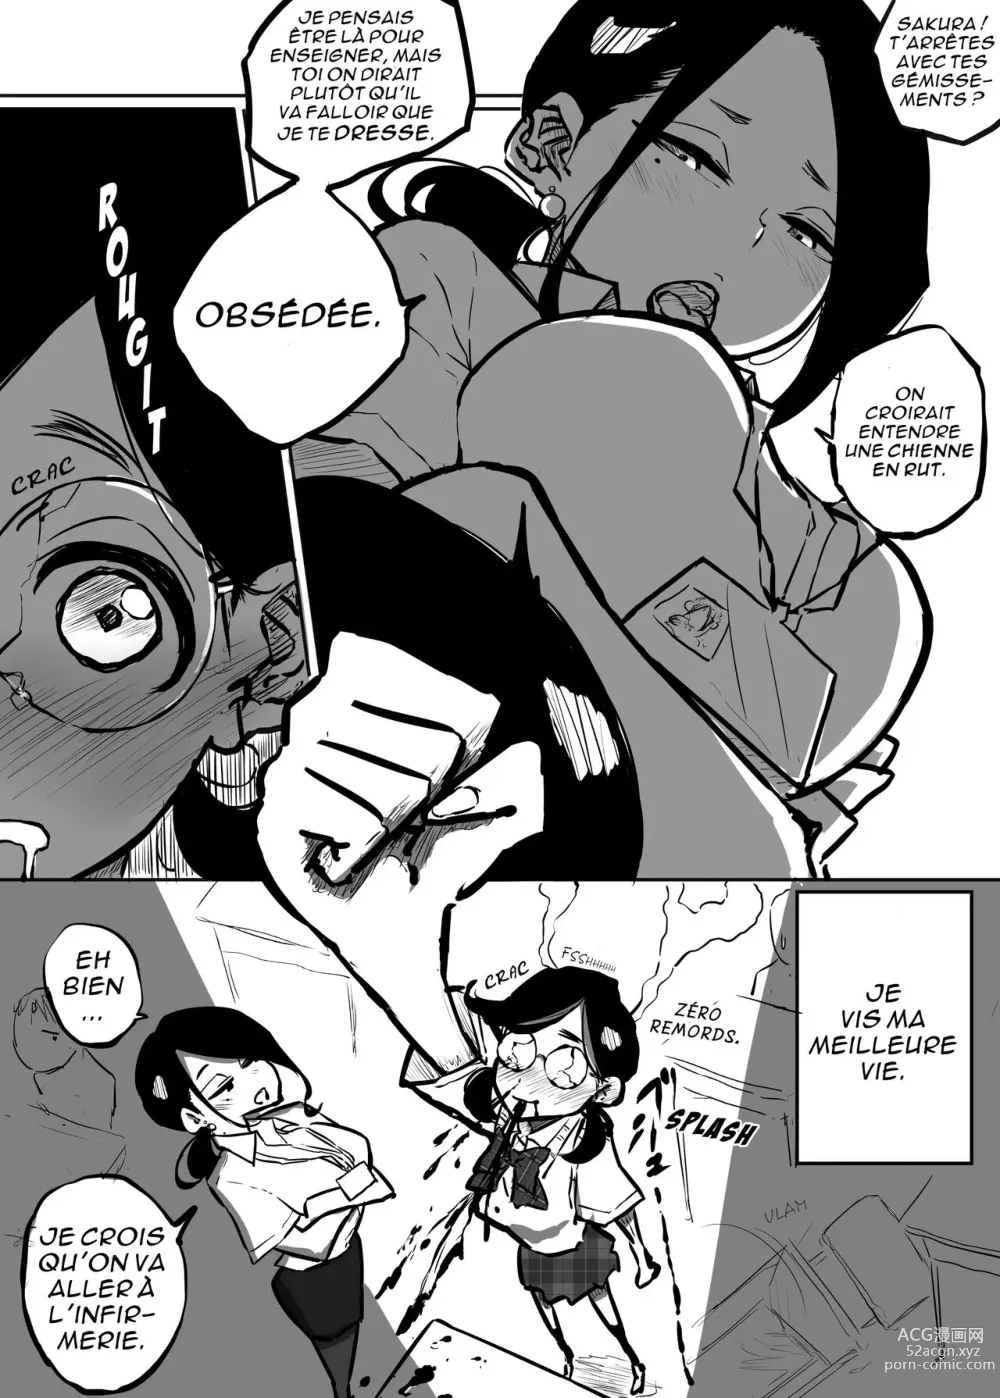 Page 3 of doujinshi Sakura veut qu'on la maltraite